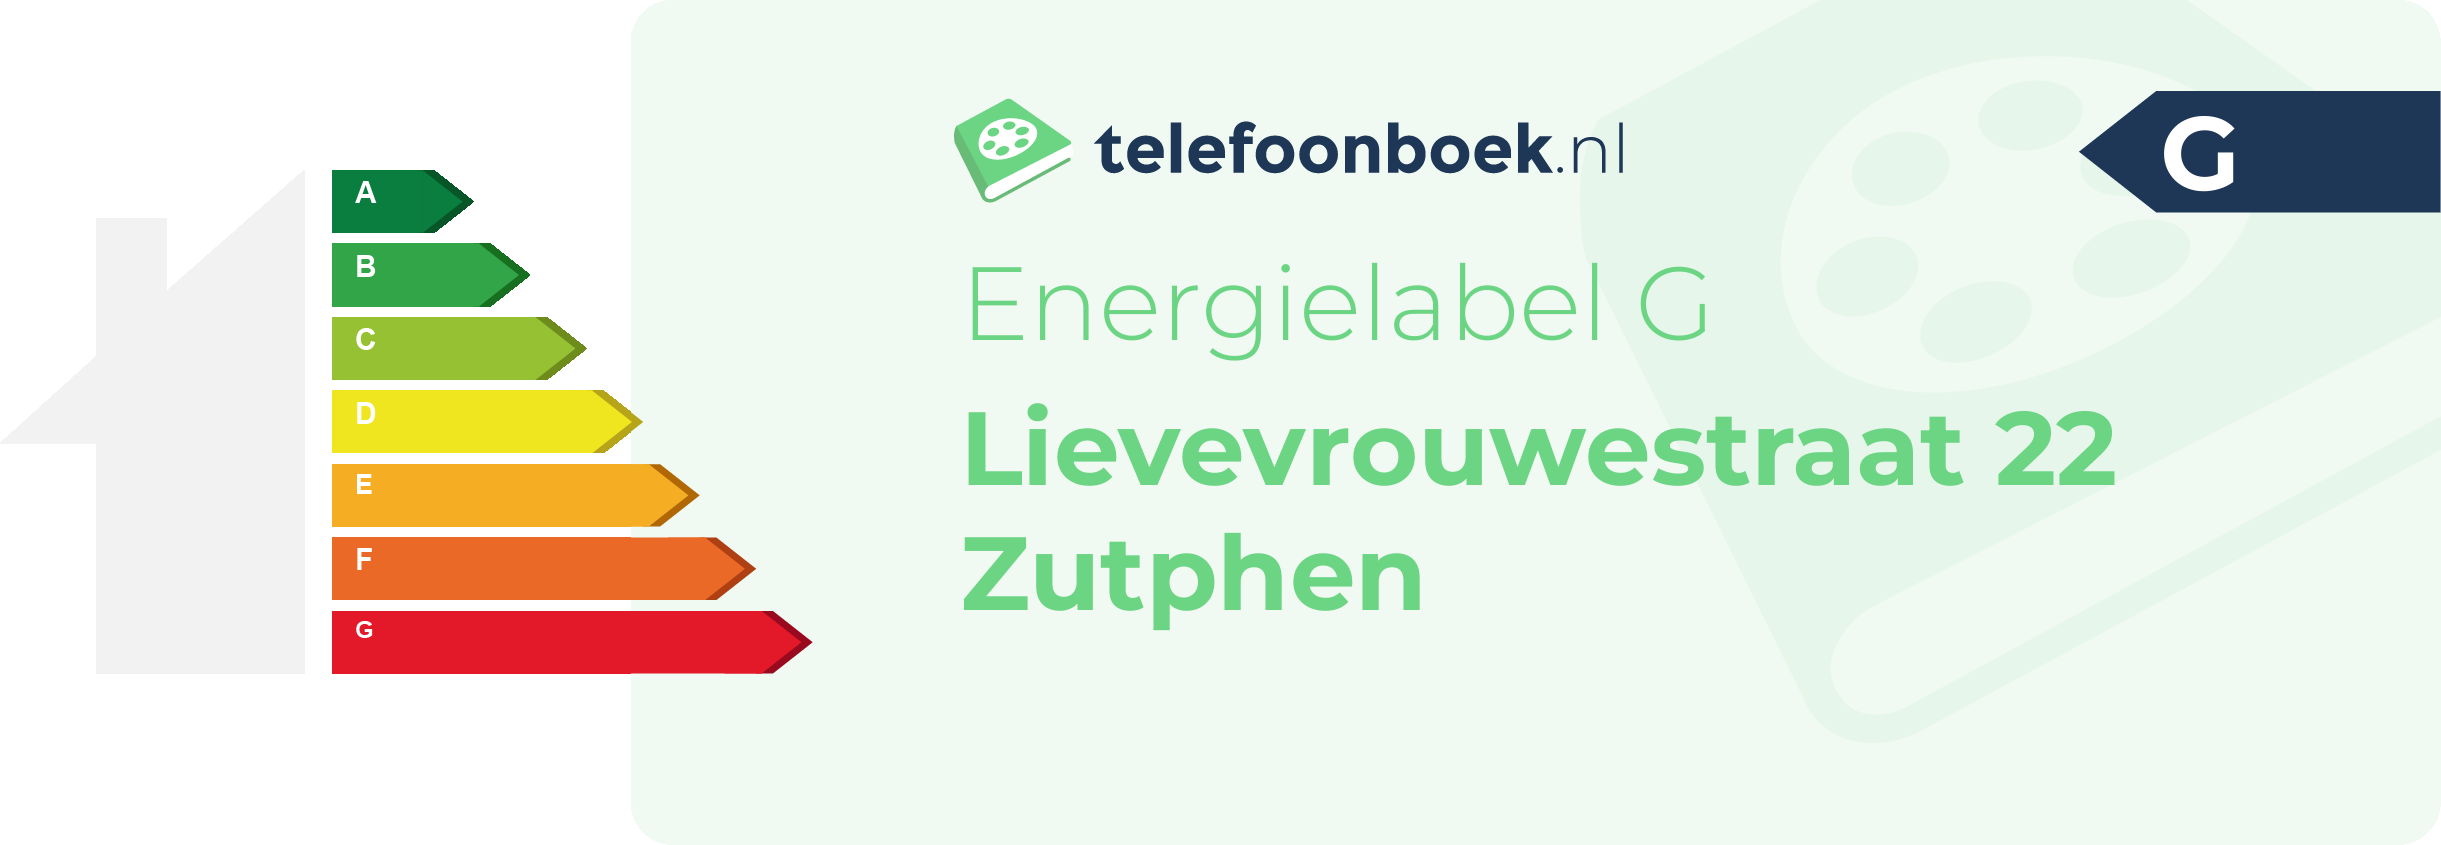 Energielabel Lievevrouwestraat 22 Zutphen